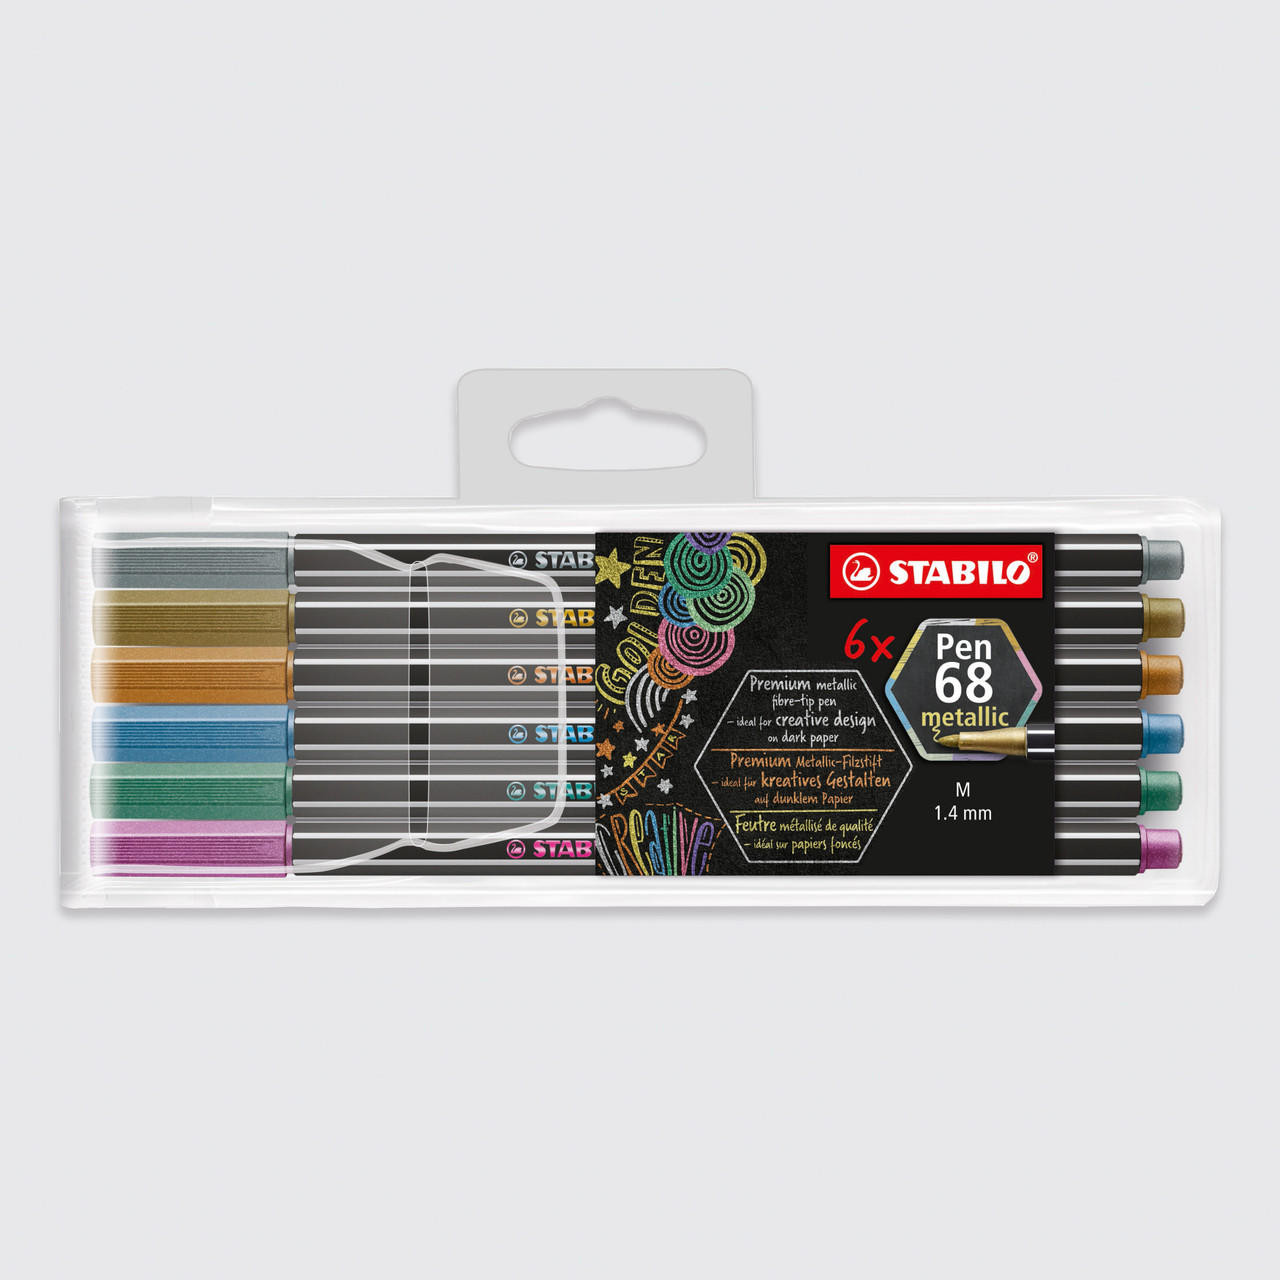 STABILO Pen 68 Wallet Set, Set of 8, Multicolor India